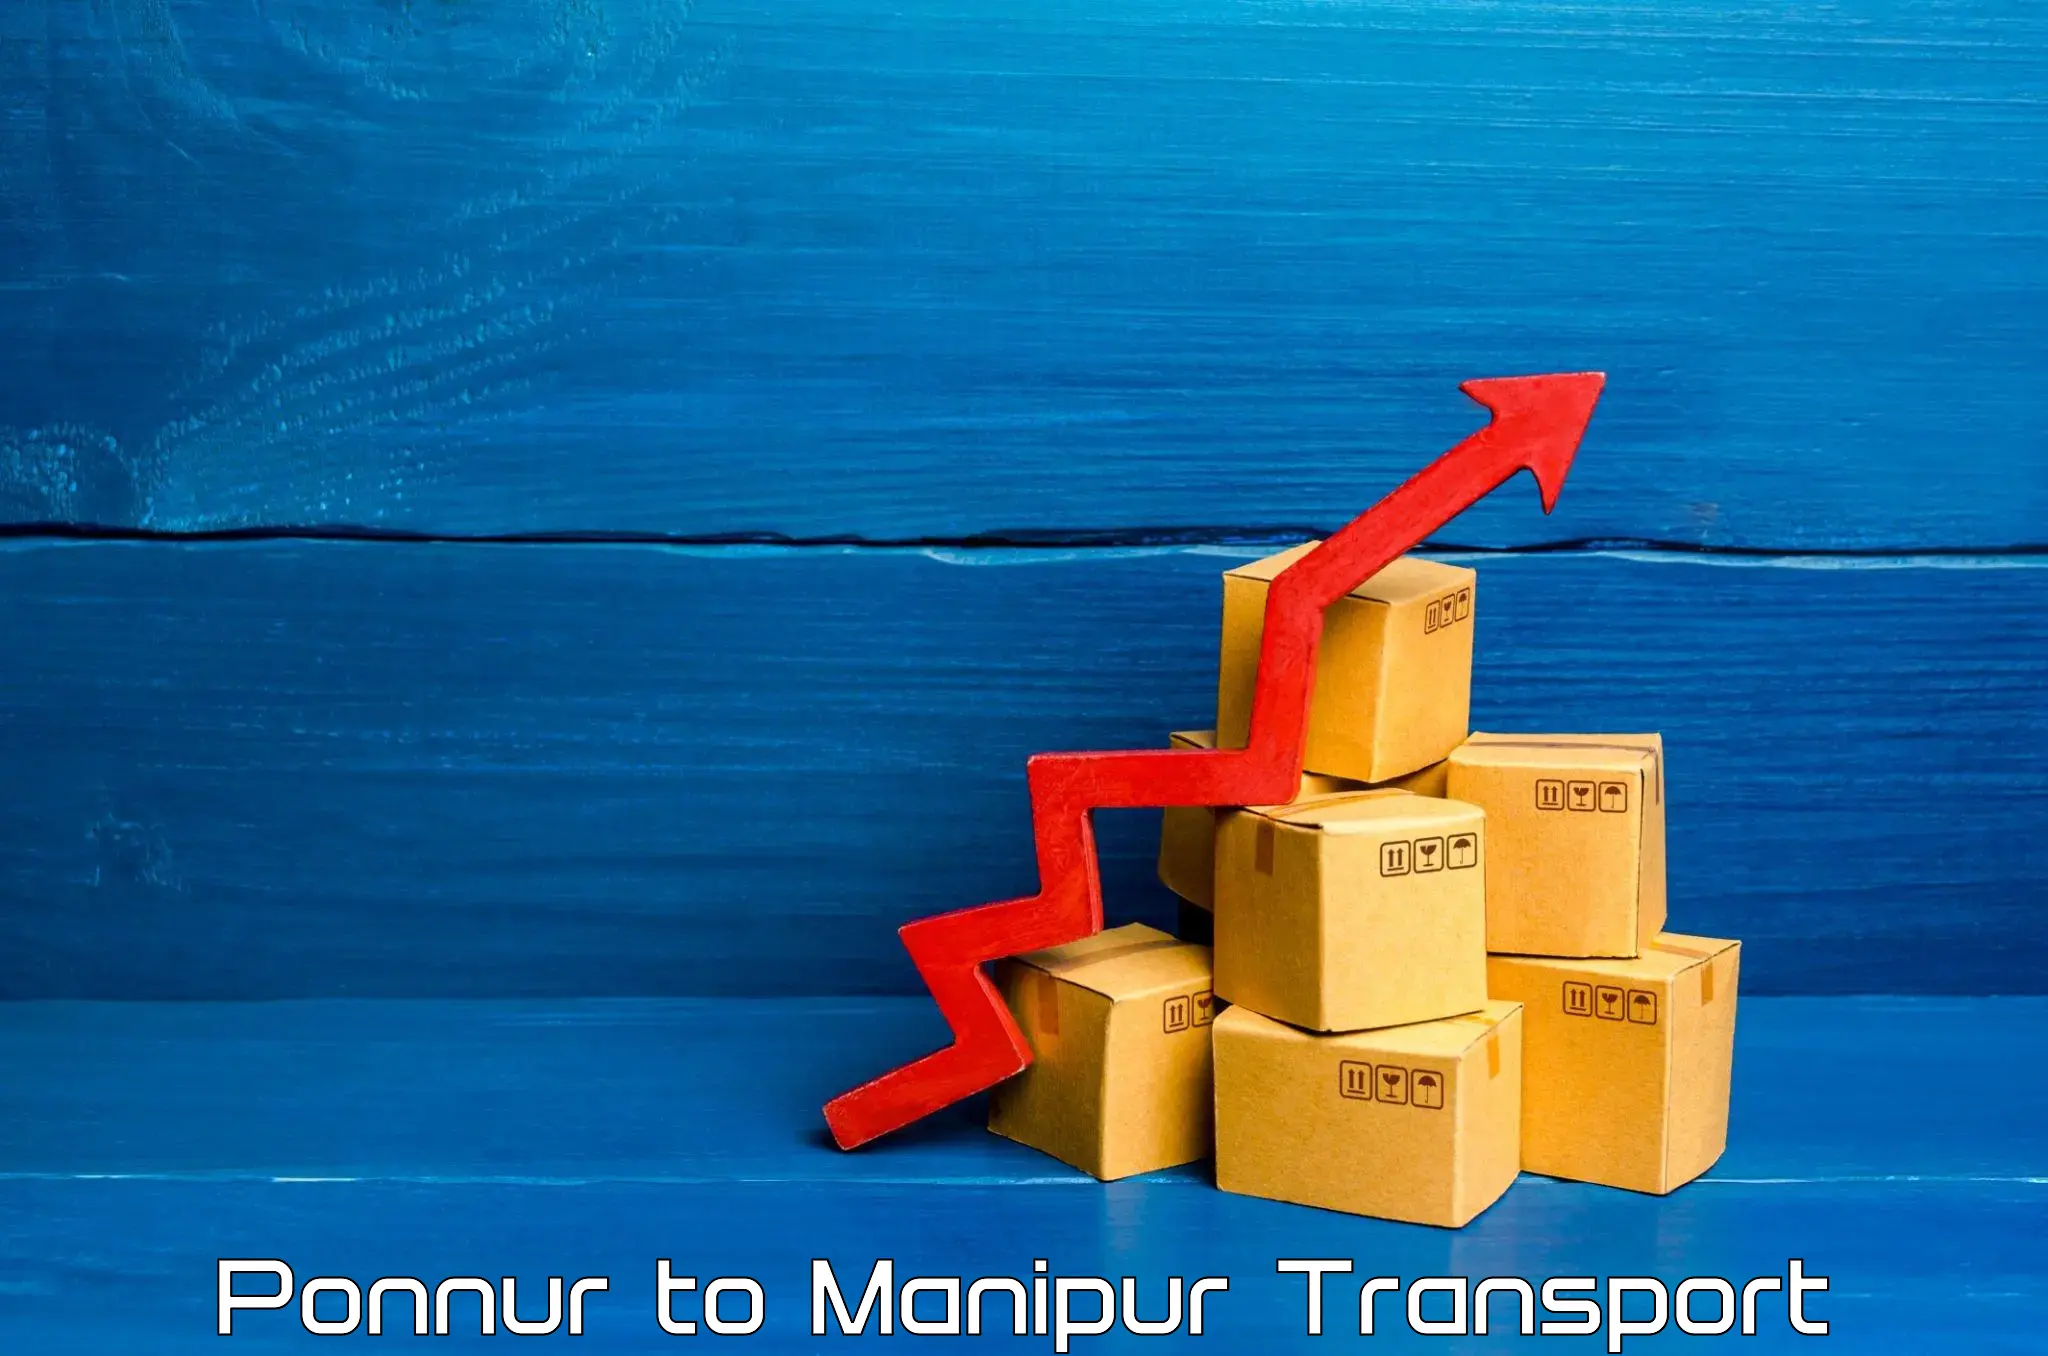 Parcel transport services Ponnur to Churachandpur